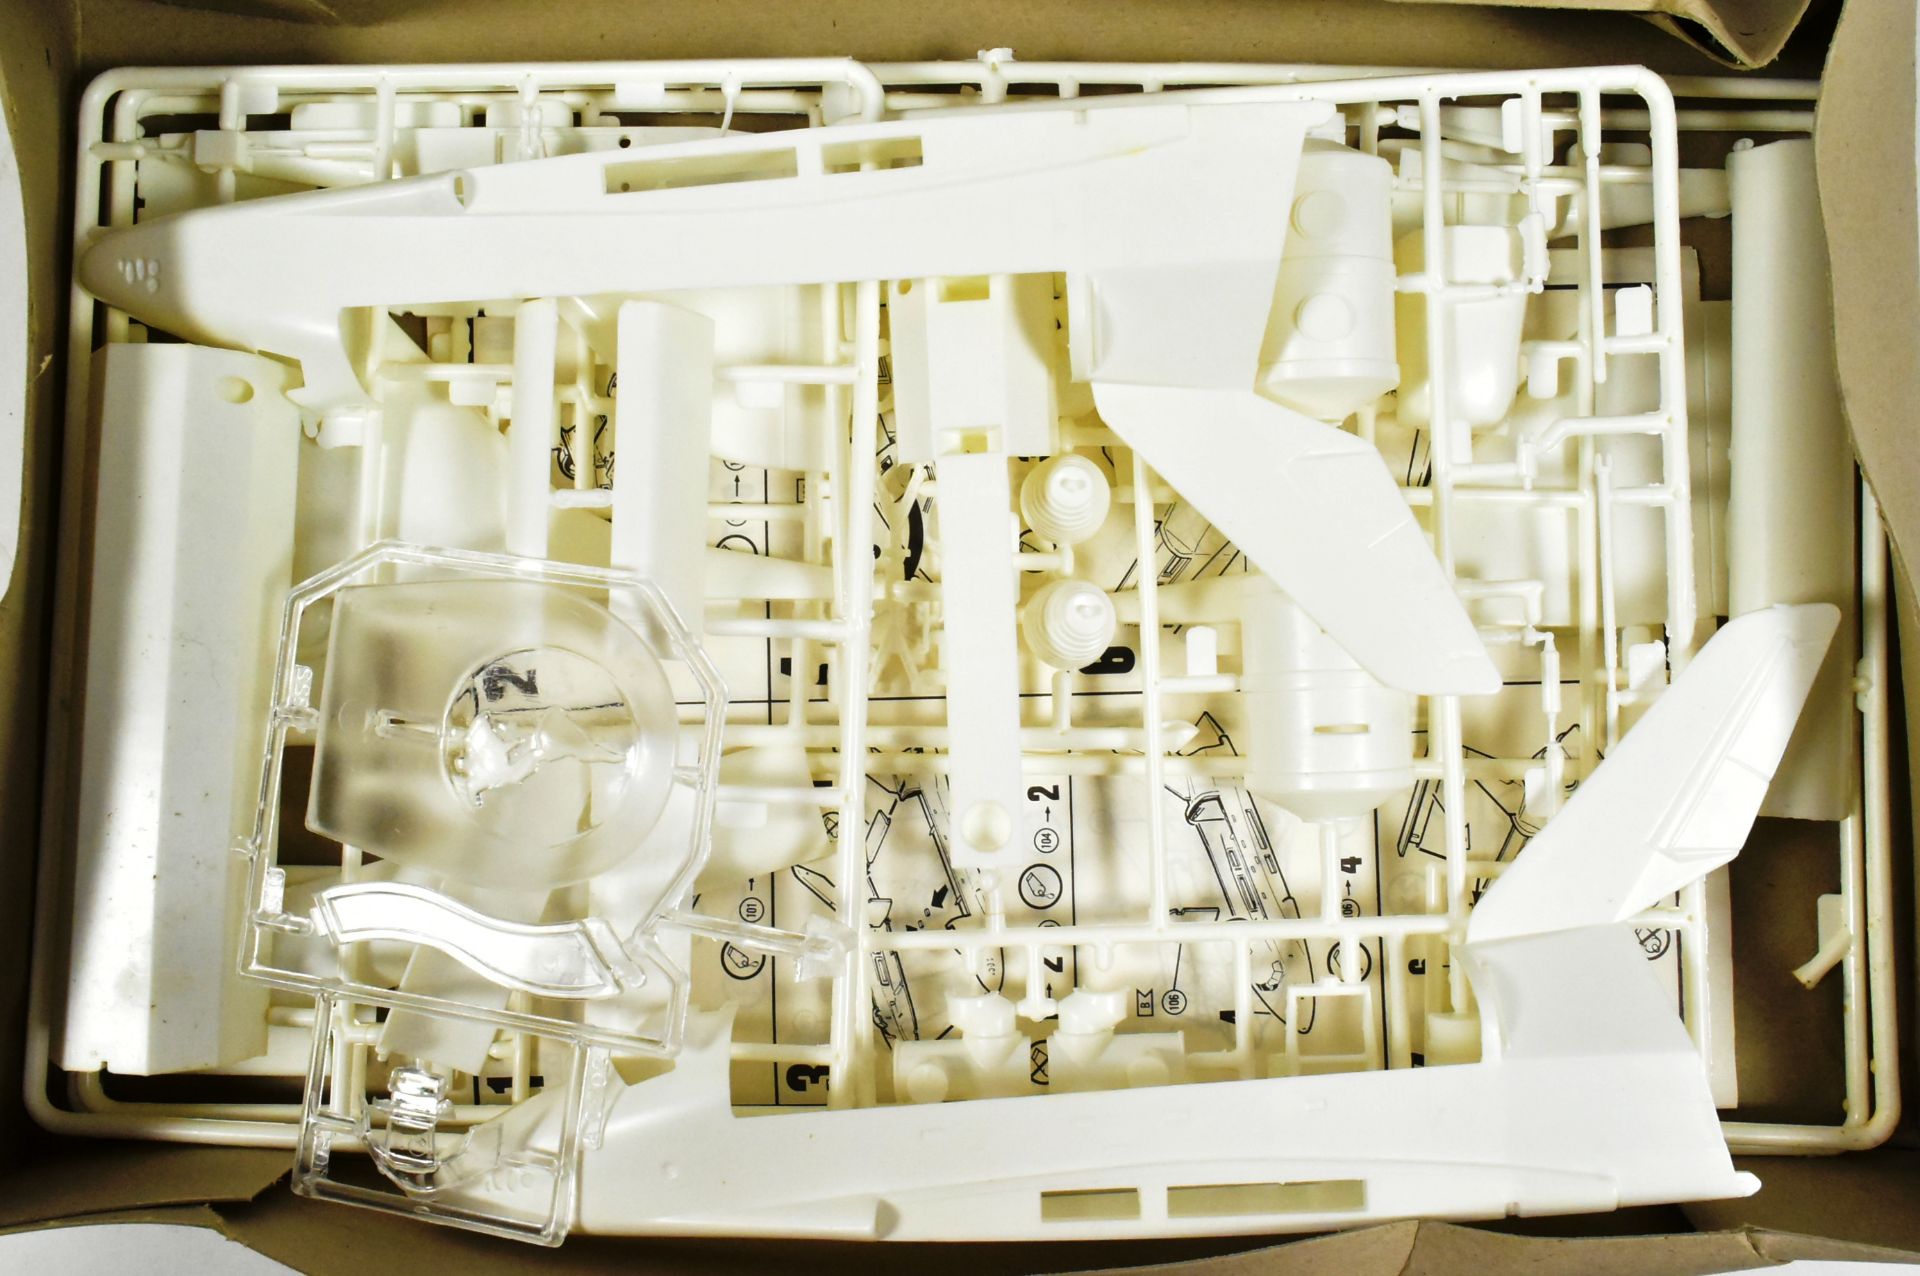 MODEL KITS - X2 REVELL PLASTIC MODEL KITS - Image 3 of 4